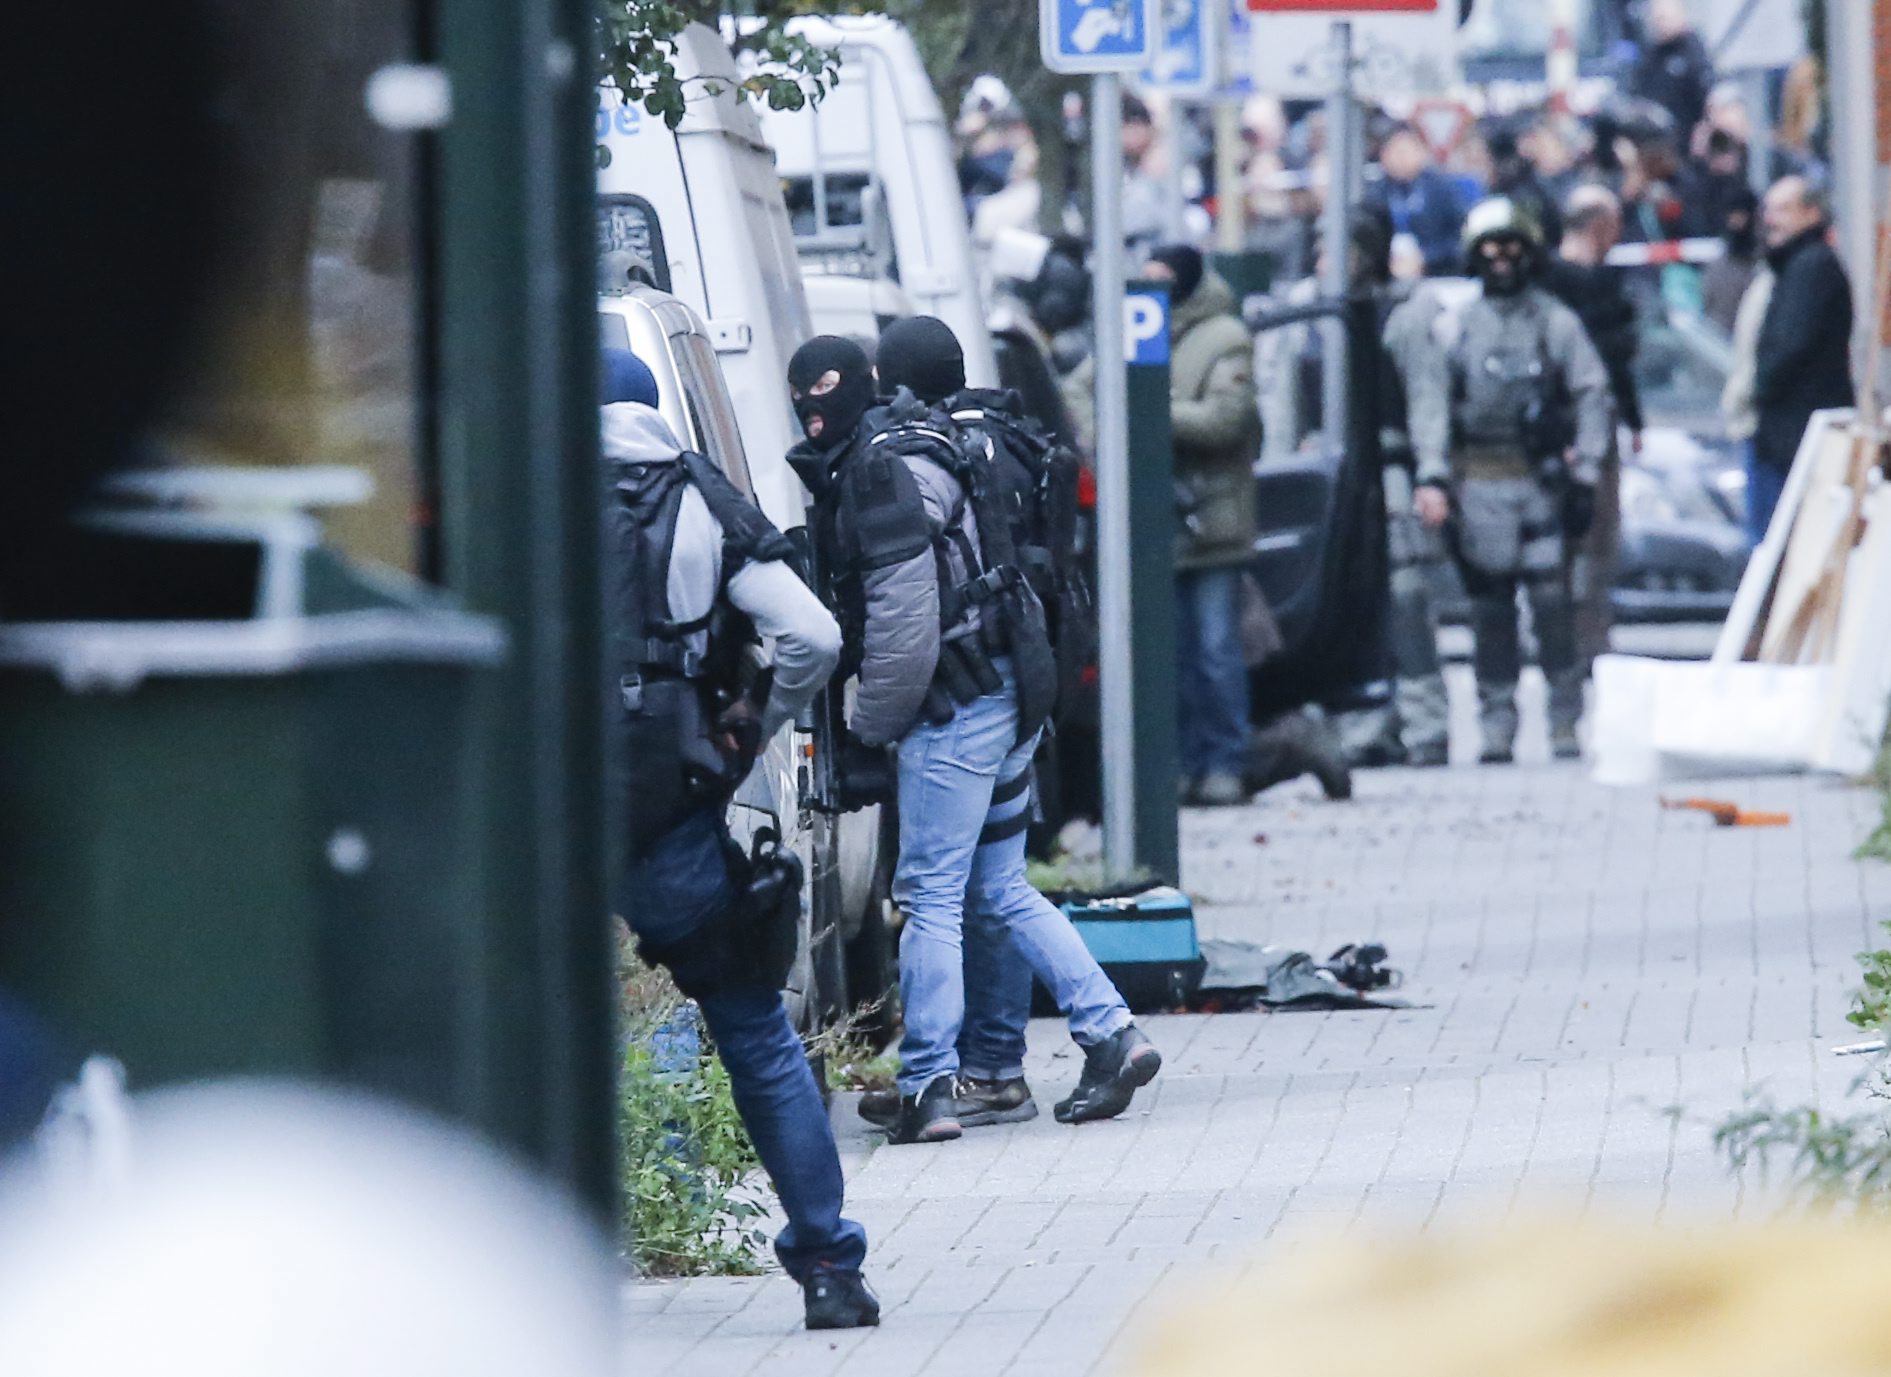 Σύλληψη υπόπτου στο Βέλγιο που είχε επαφές με τους δράστες στο Παρίσι